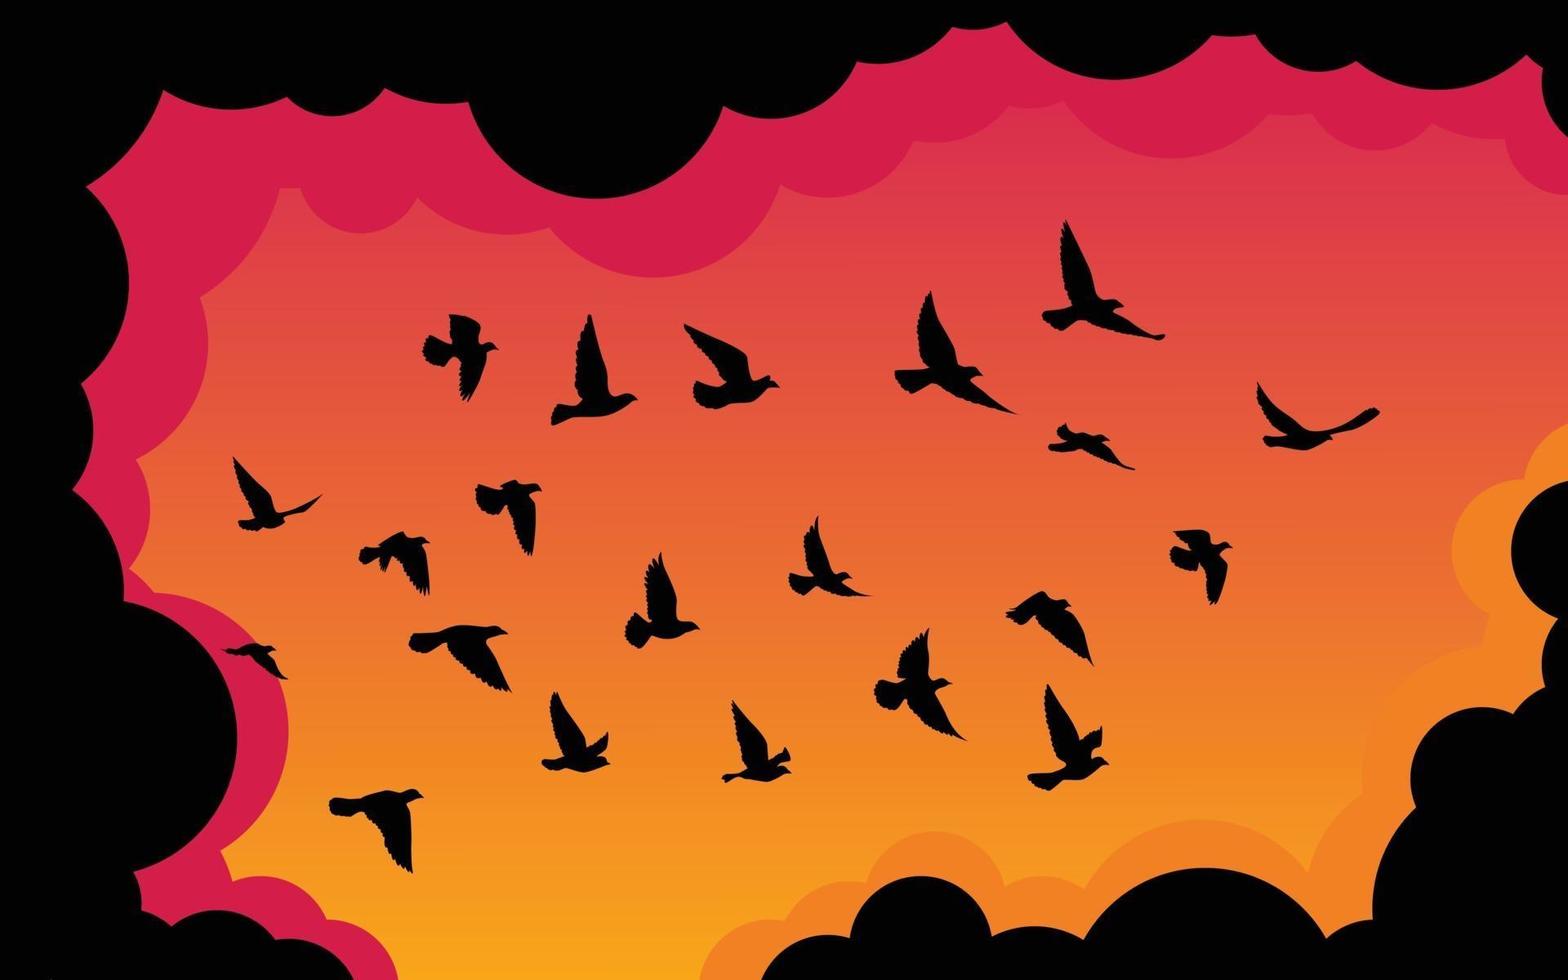 carta da parati del modello delle siluette degli uccelli volanti. illustrazione vettoriale. uccello isolato in volo. disegno del tatuaggio. modello per carta, pacchetto e sfondo. vettore